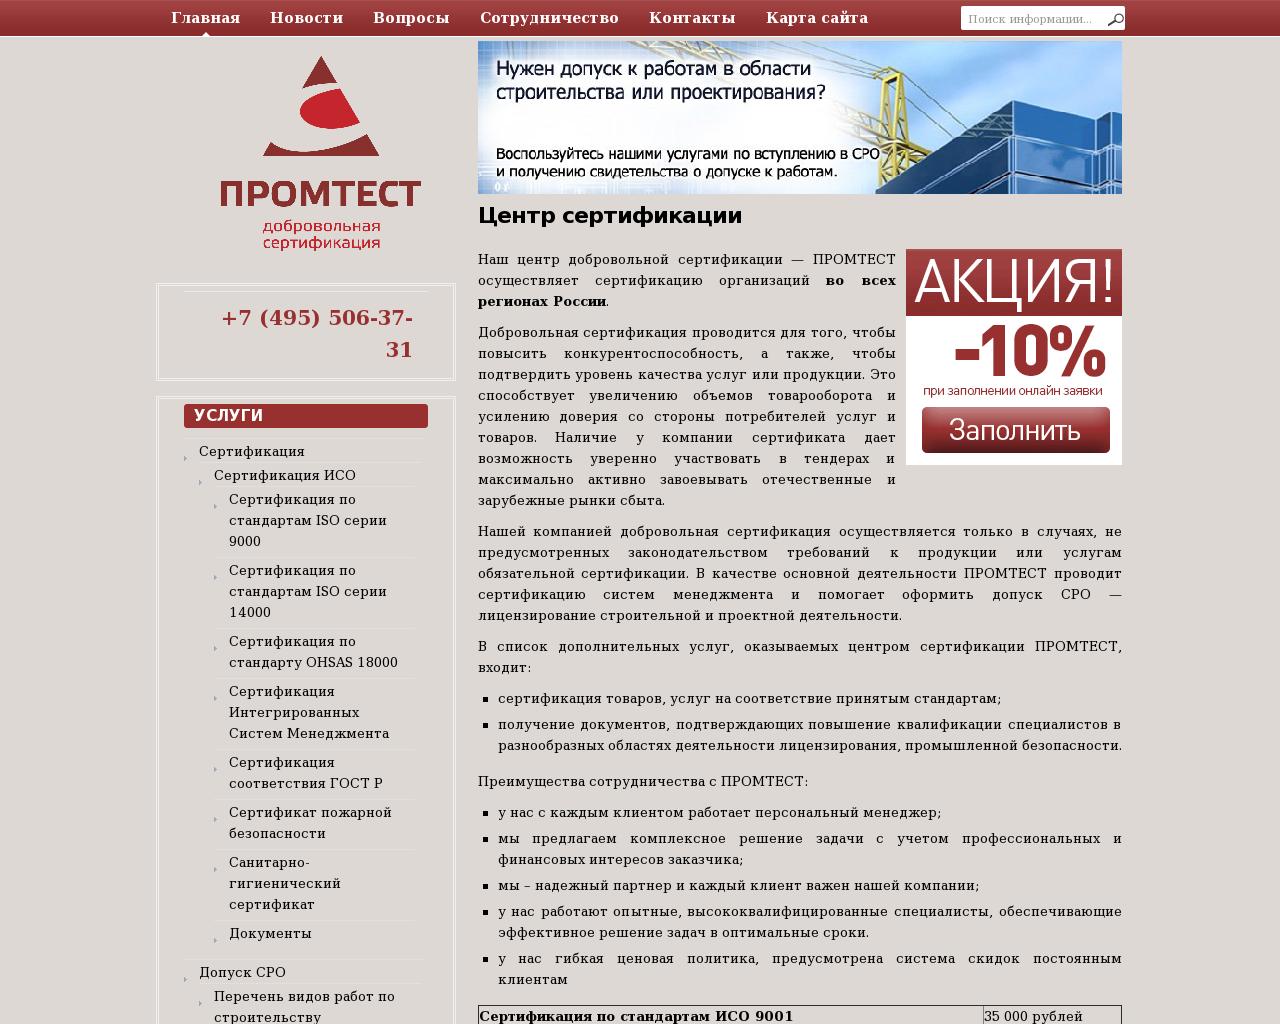 Изображение сайта mospromtest.ru в разрешении 1280x1024